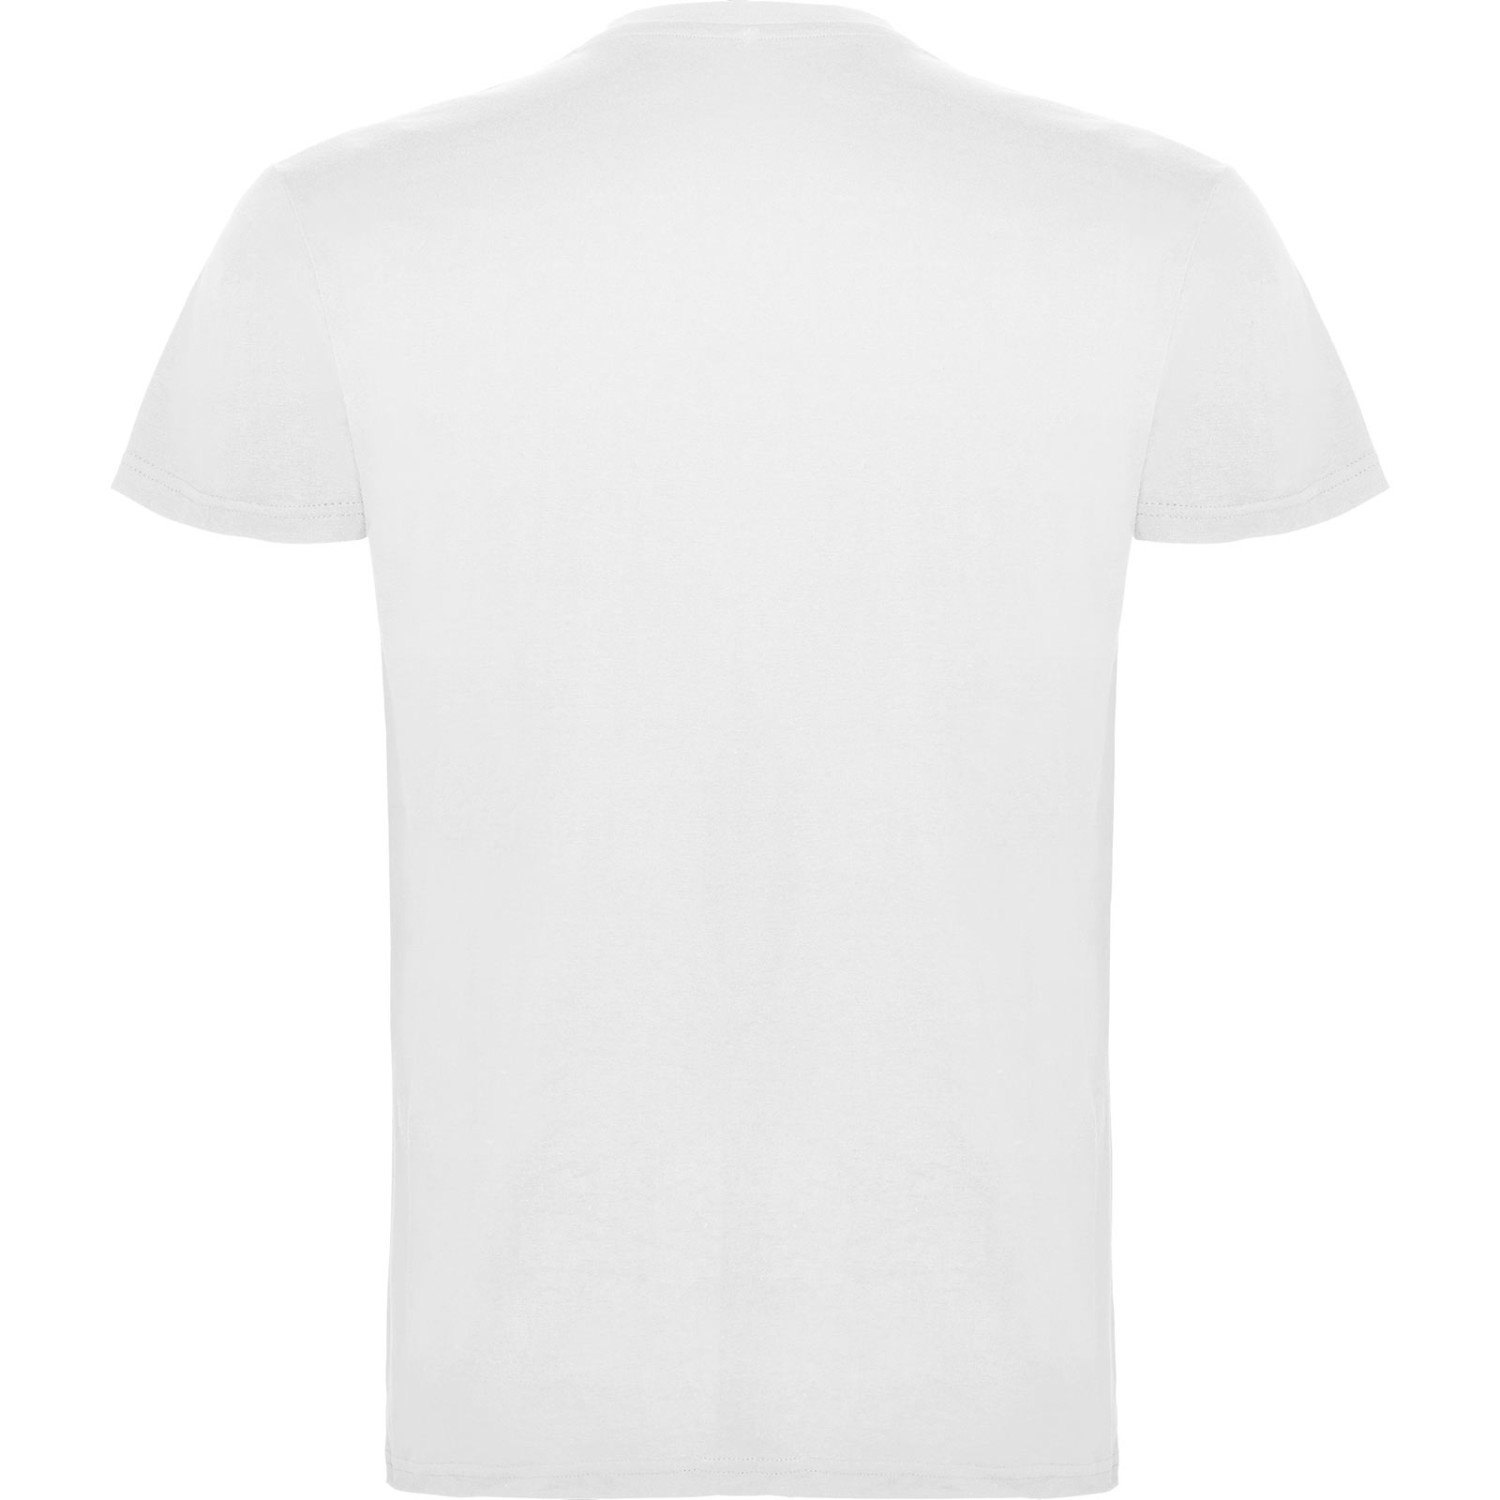 3. Foto T-Shirt BEAGLE Kurzarm Rundhals mit Druck (Farbe: weiß Größe: S)